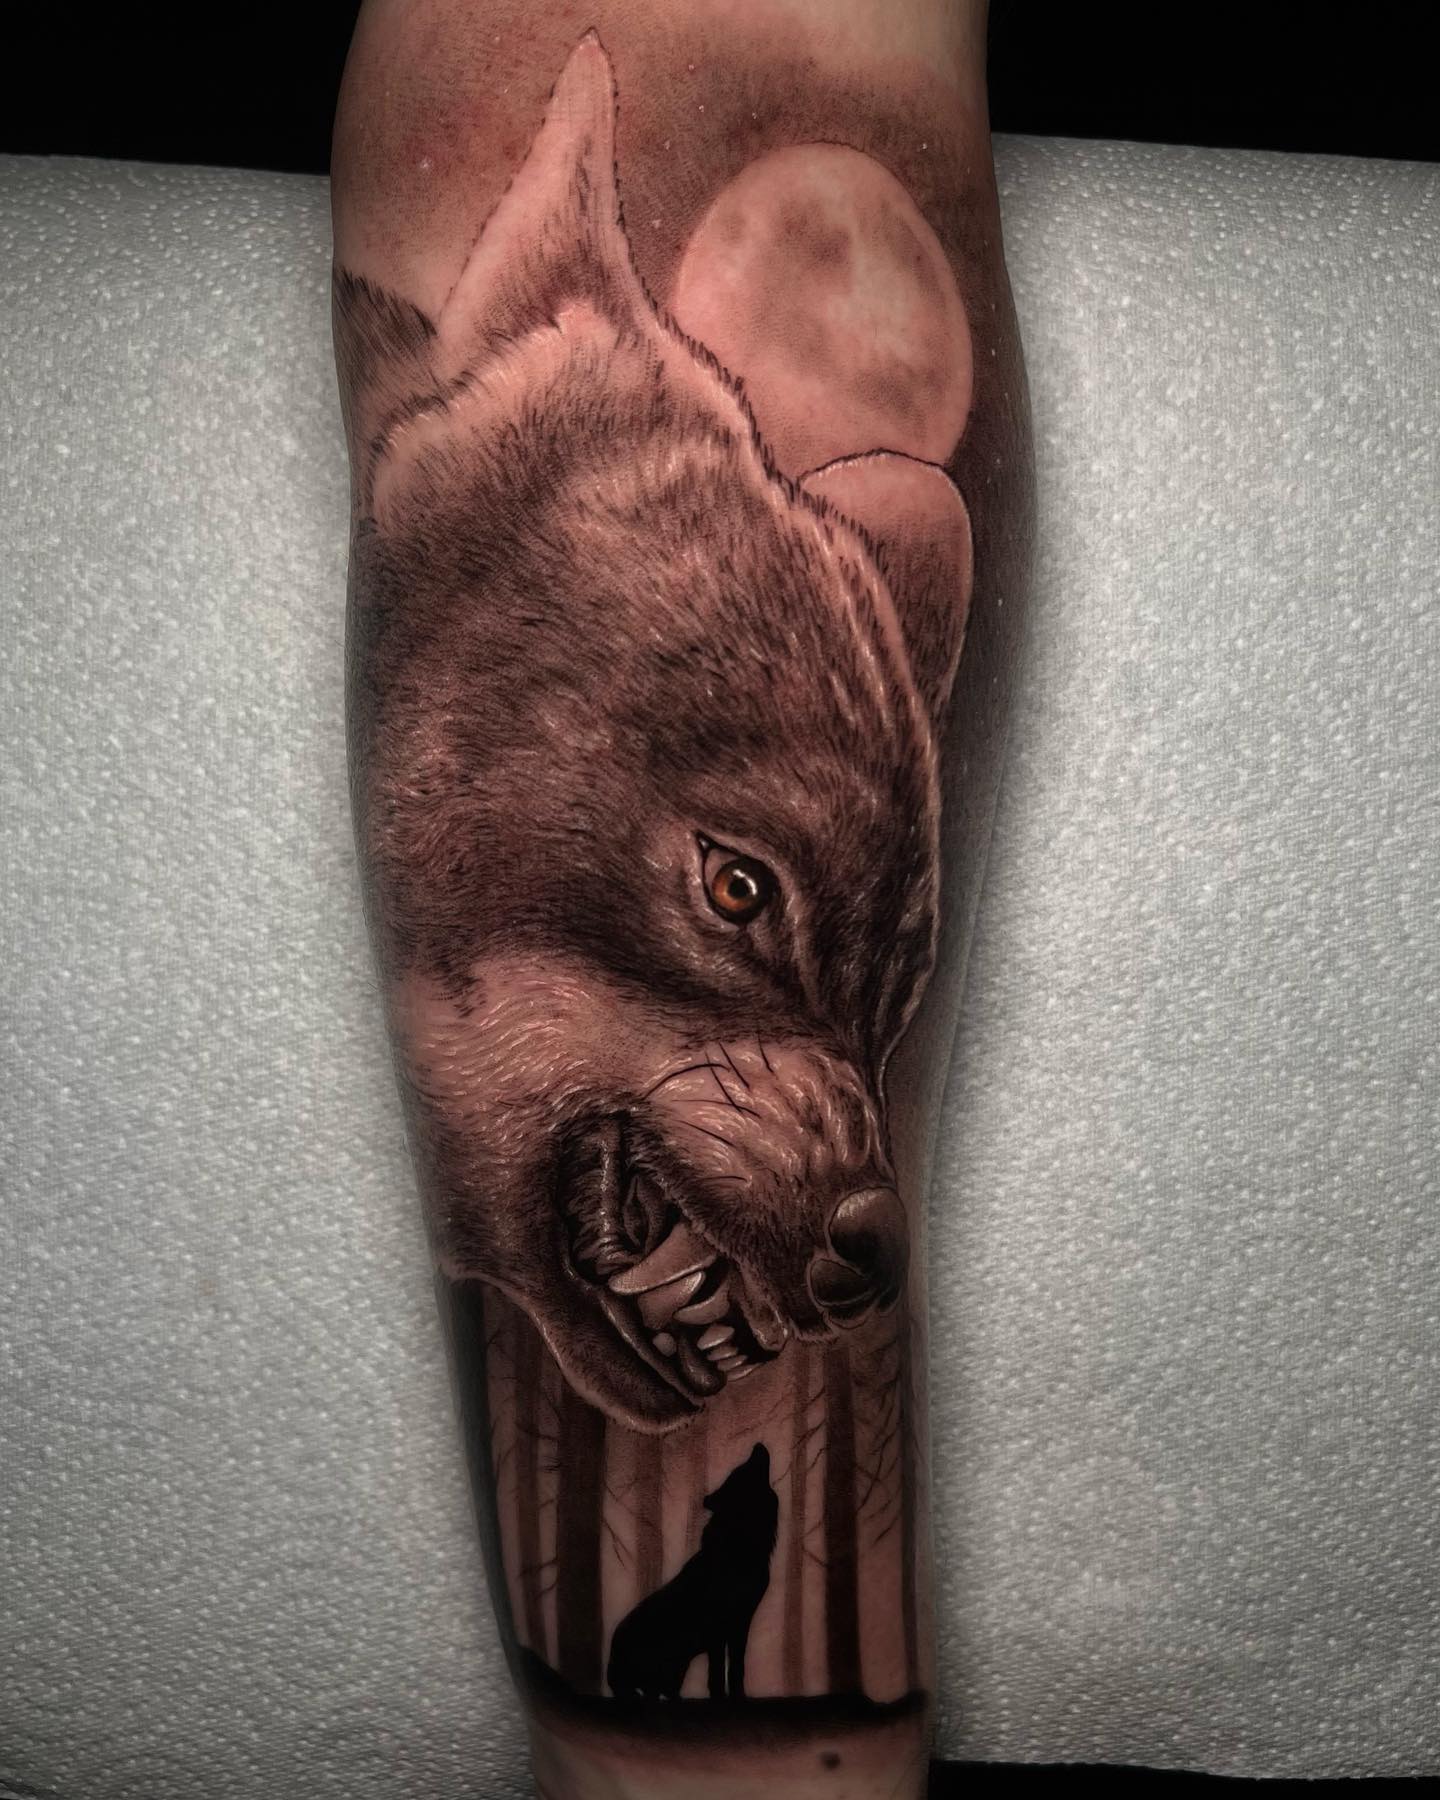 Diseño de tatuaje realista de lobo.